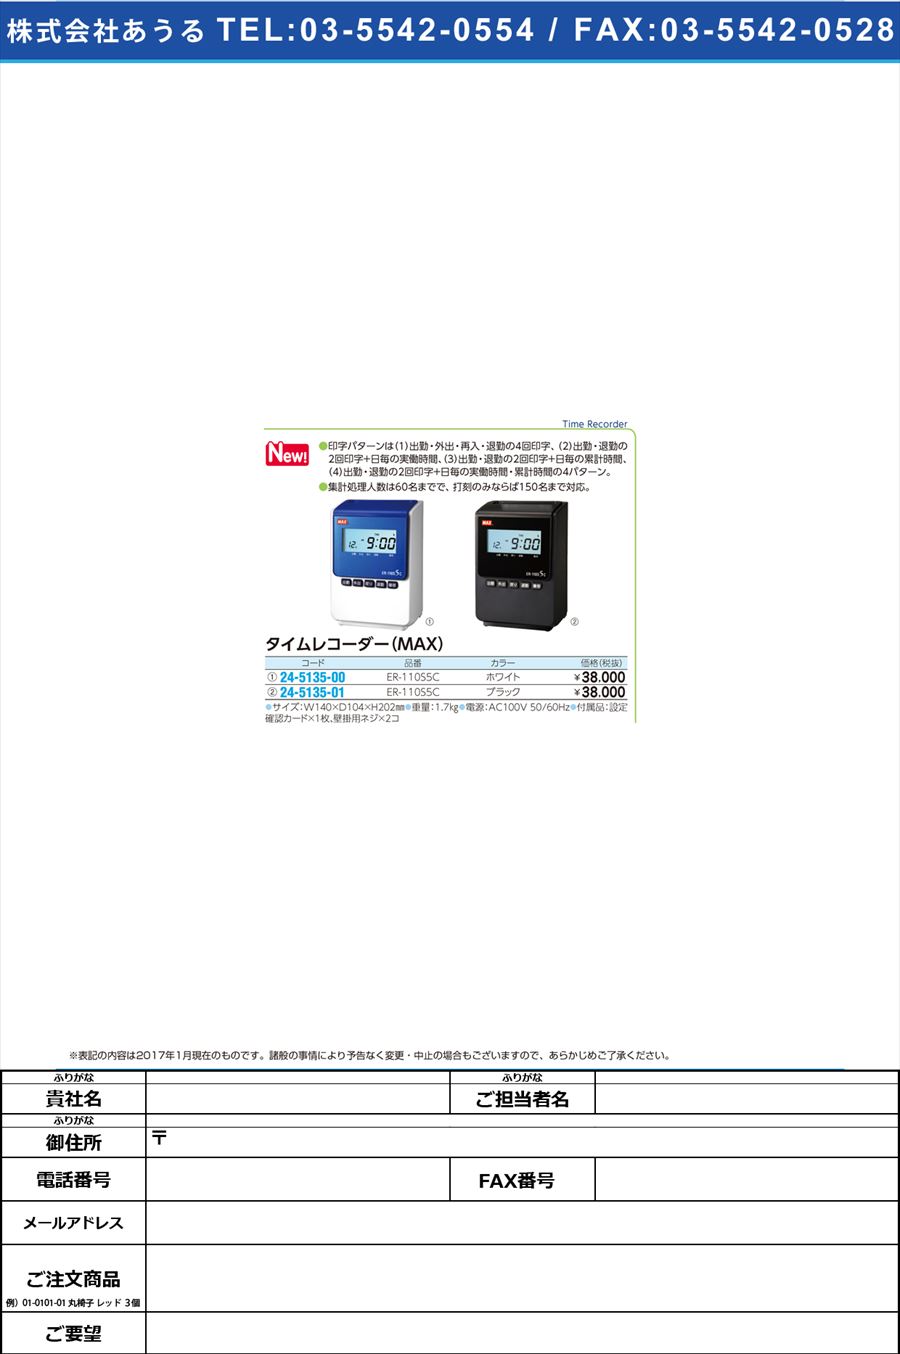 タイムレコーダー ＥＲー１１０Ｓ５Ｃ MAXﾀｲﾑﾚｺｰﾀﾞｰ ER90172(ﾌﾞﾗｯｸ)(24-5135-01)【1台単位】【2017年カタログ商品】